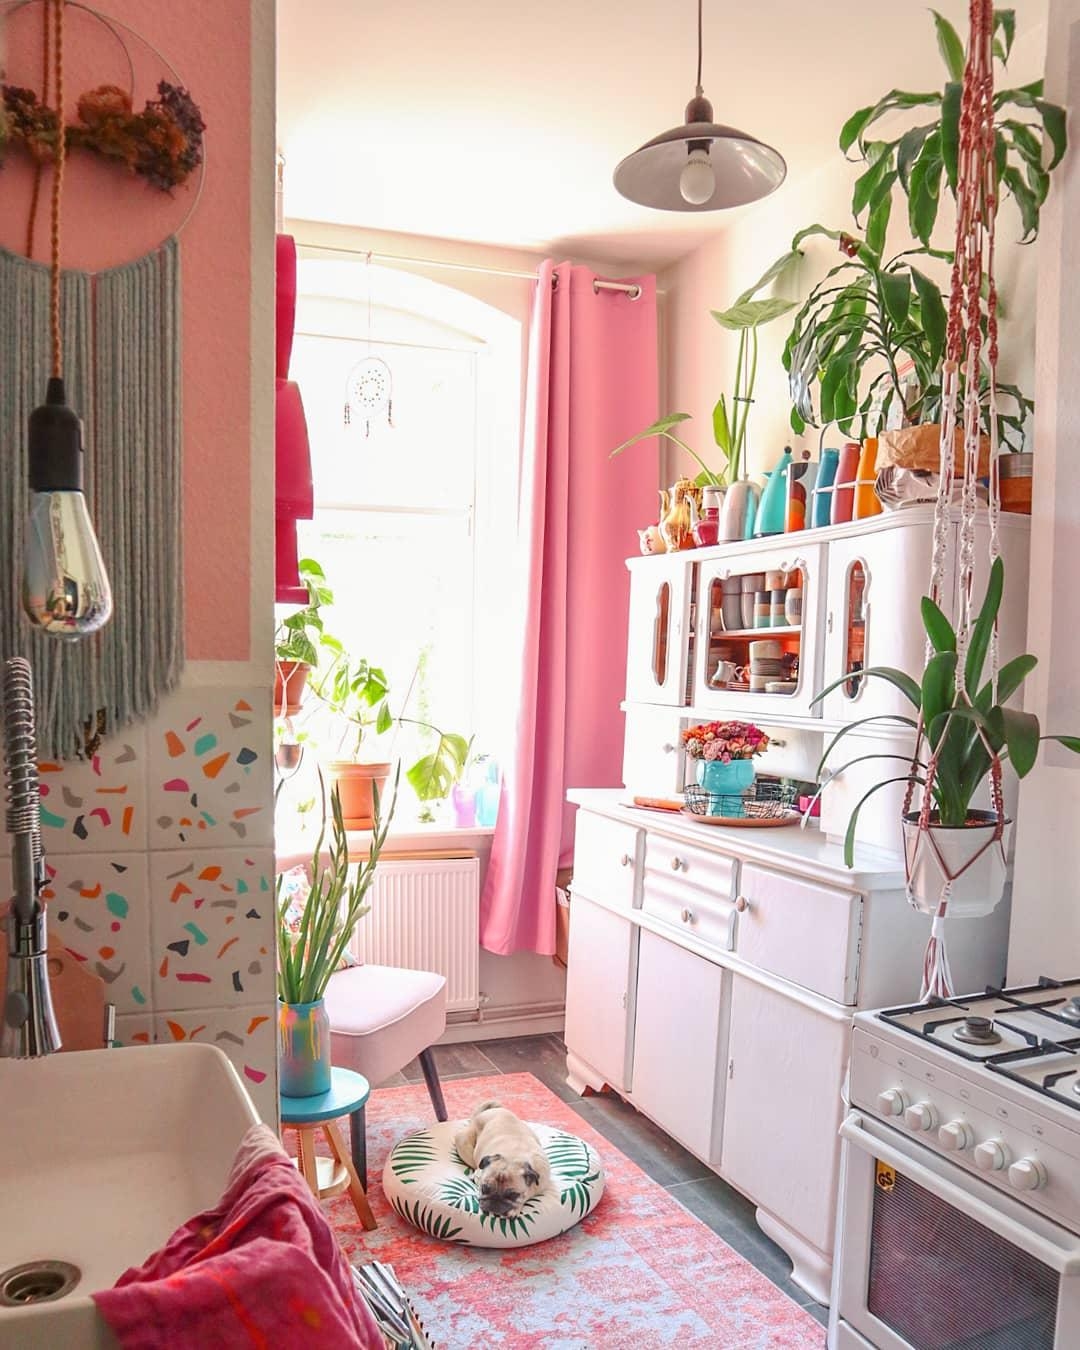 #kitchen #tinykitchen #volorful #pinklover